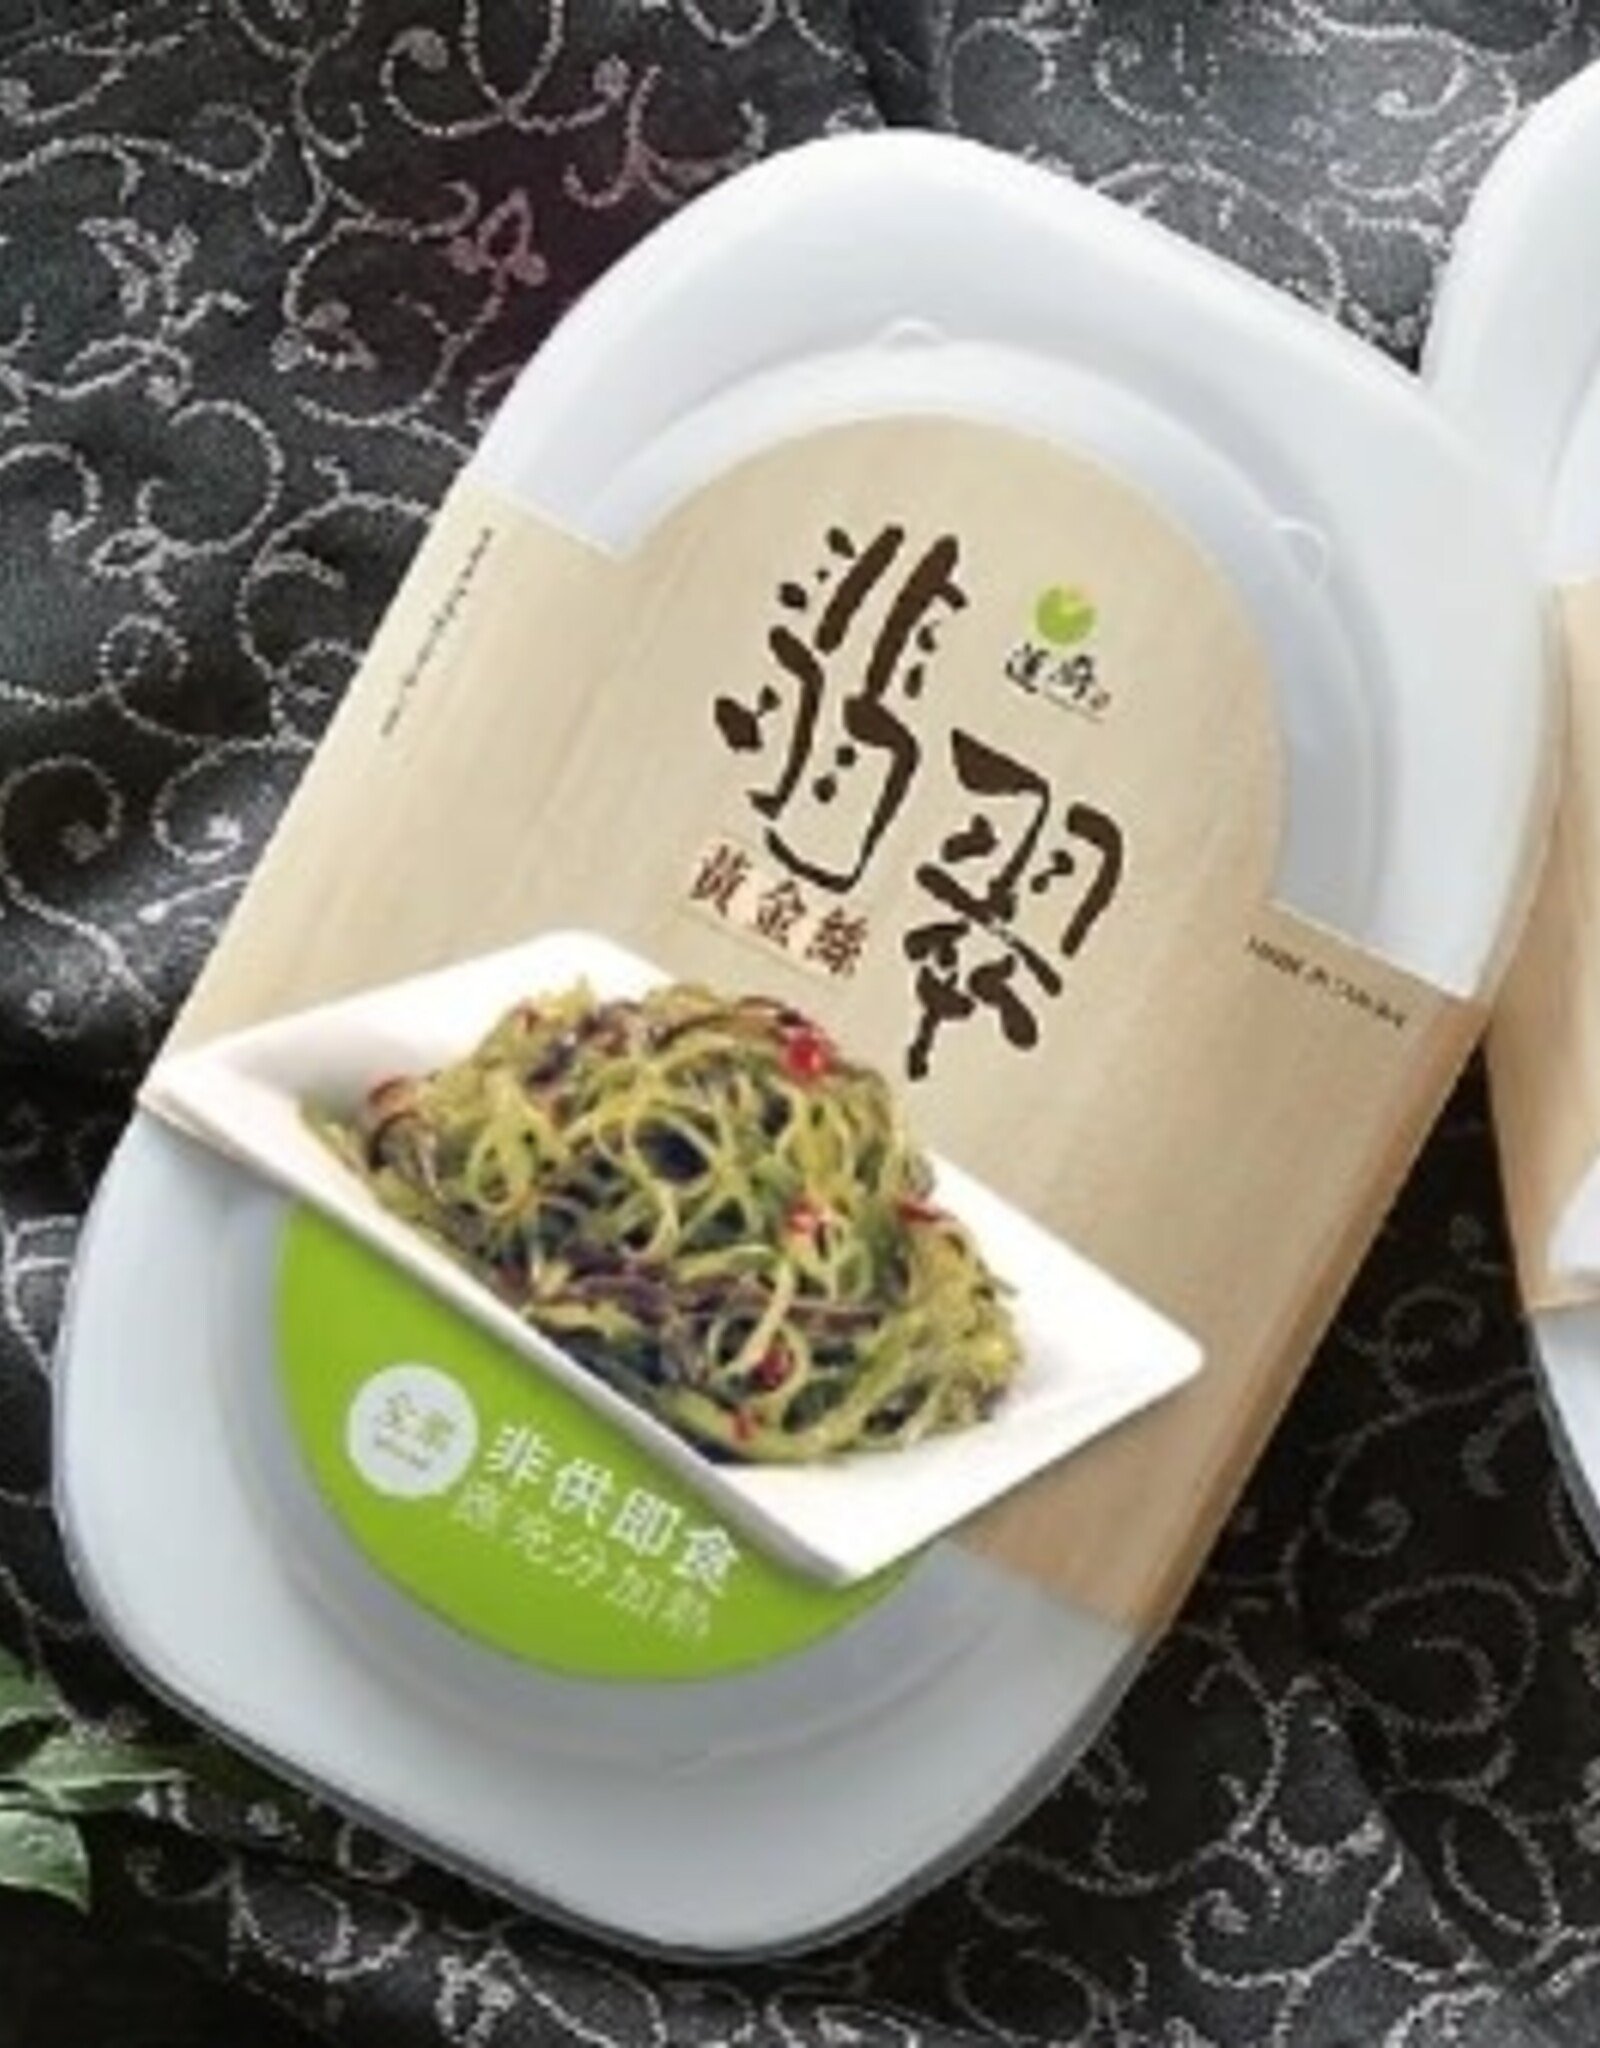 Bai Yi Xiang * 蓮廚/百一香 (BYX)Vegan Shredded Vinegary Kelp Sprouts with Black Fungu*(蓮廚)翡翠黃金絲